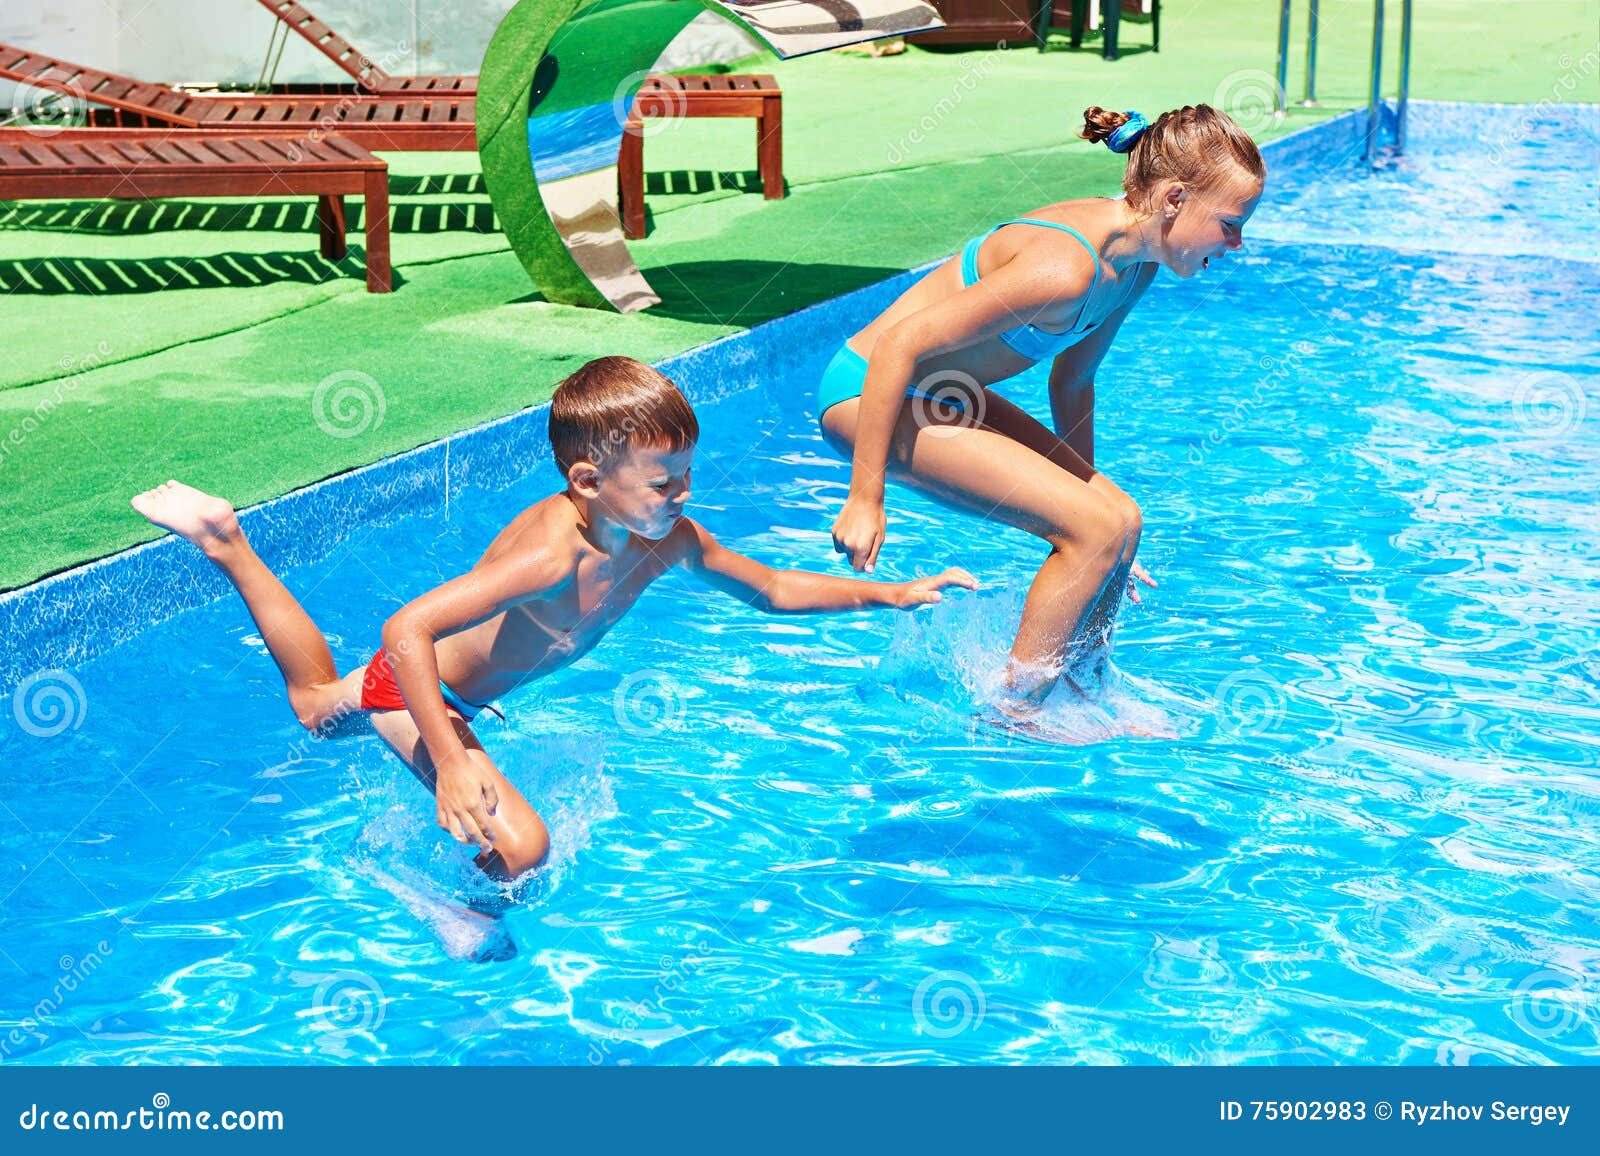 Мальчик трусы бассейн. Мальчик и девочка в бассейне. Мальчики в бассейне. Два подростка в бассейне. Мальчики бассейн в бассейне.